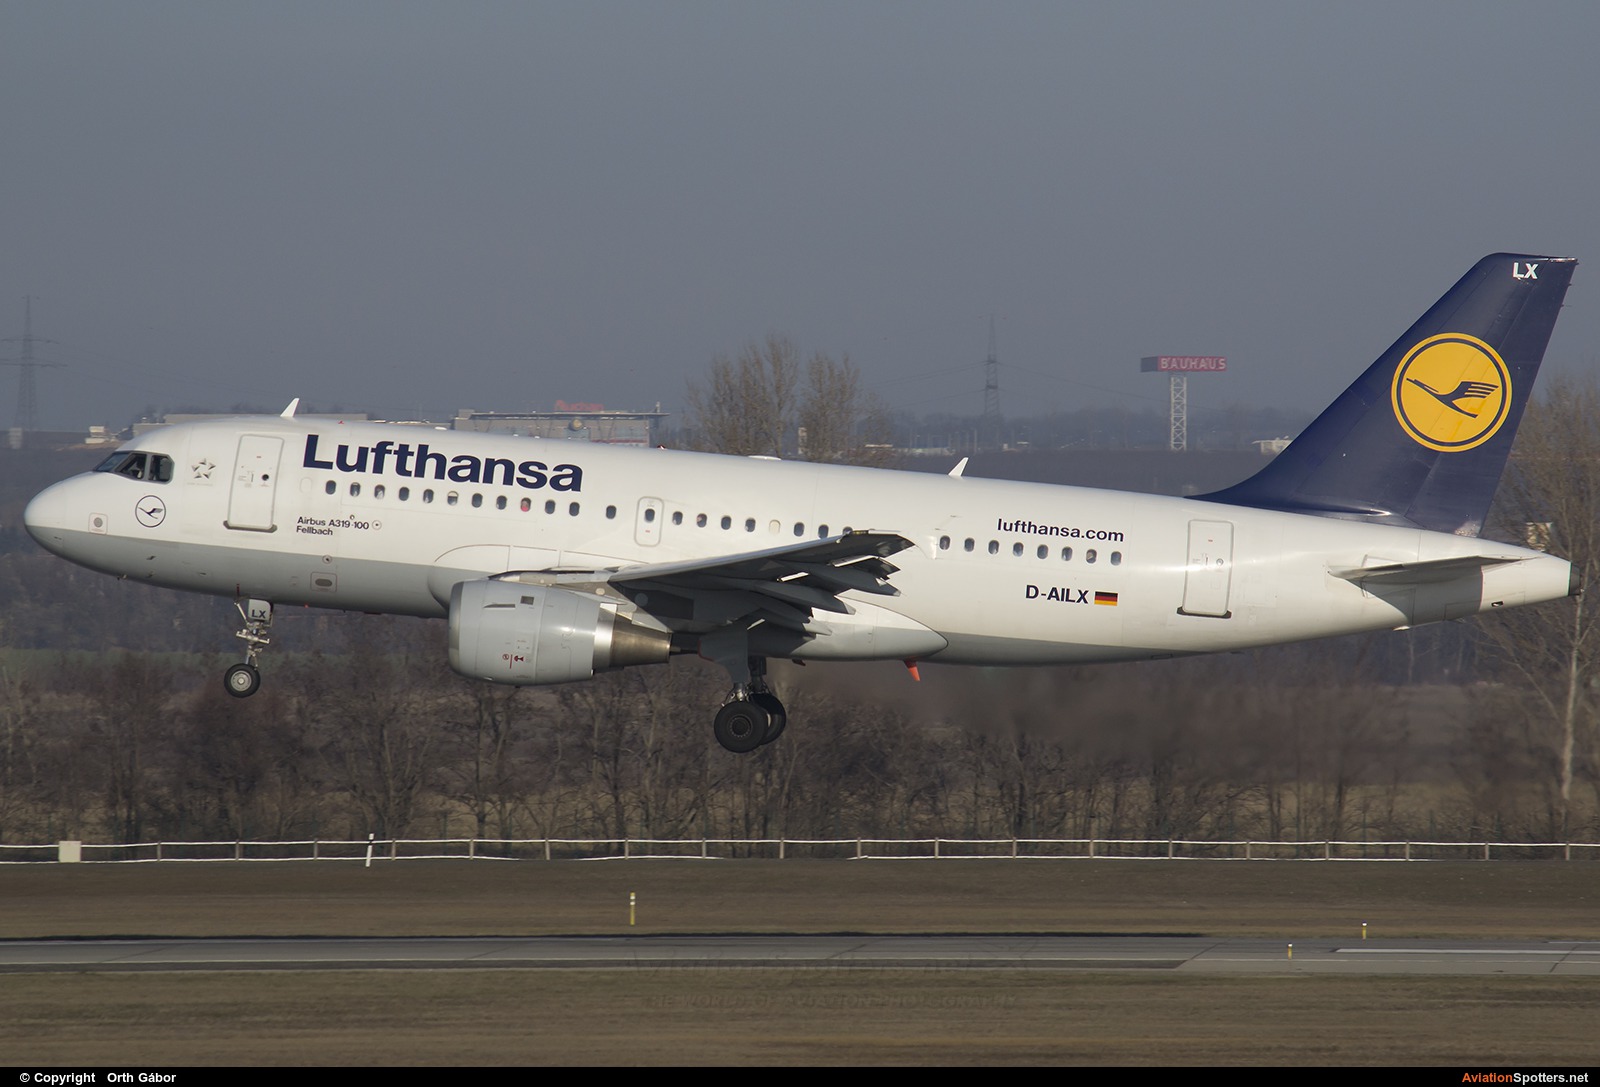 Lufthansa  -  A319  (D-AILX) By Orth Gábor (Roodkop)